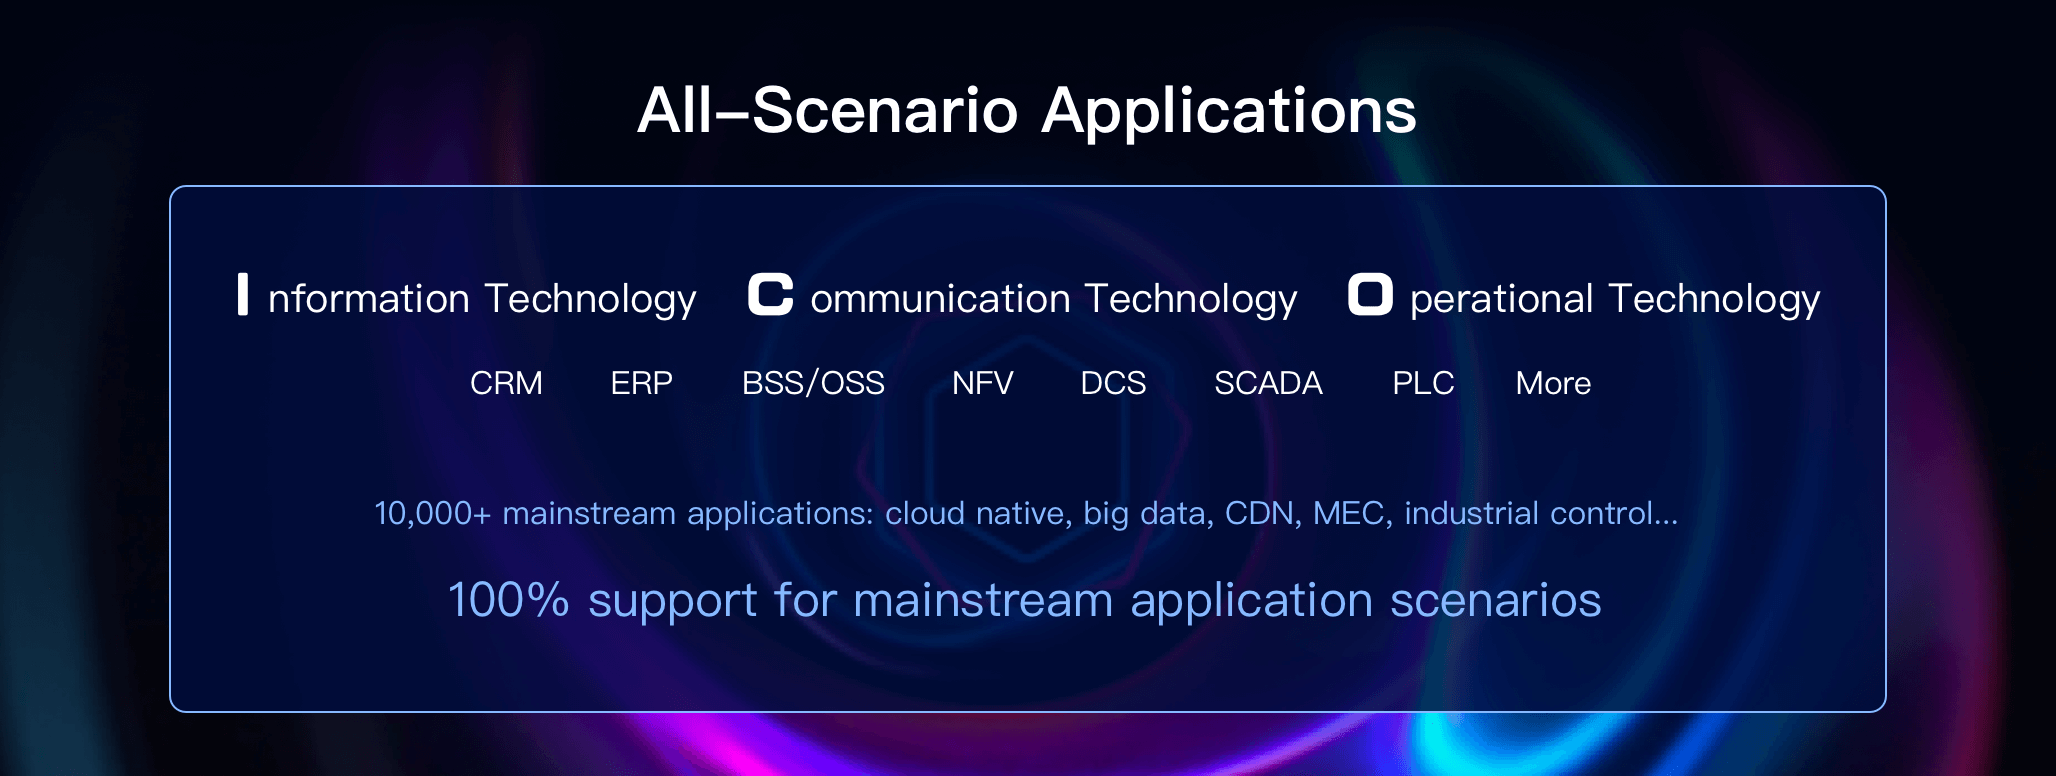 All-Scenario Applications